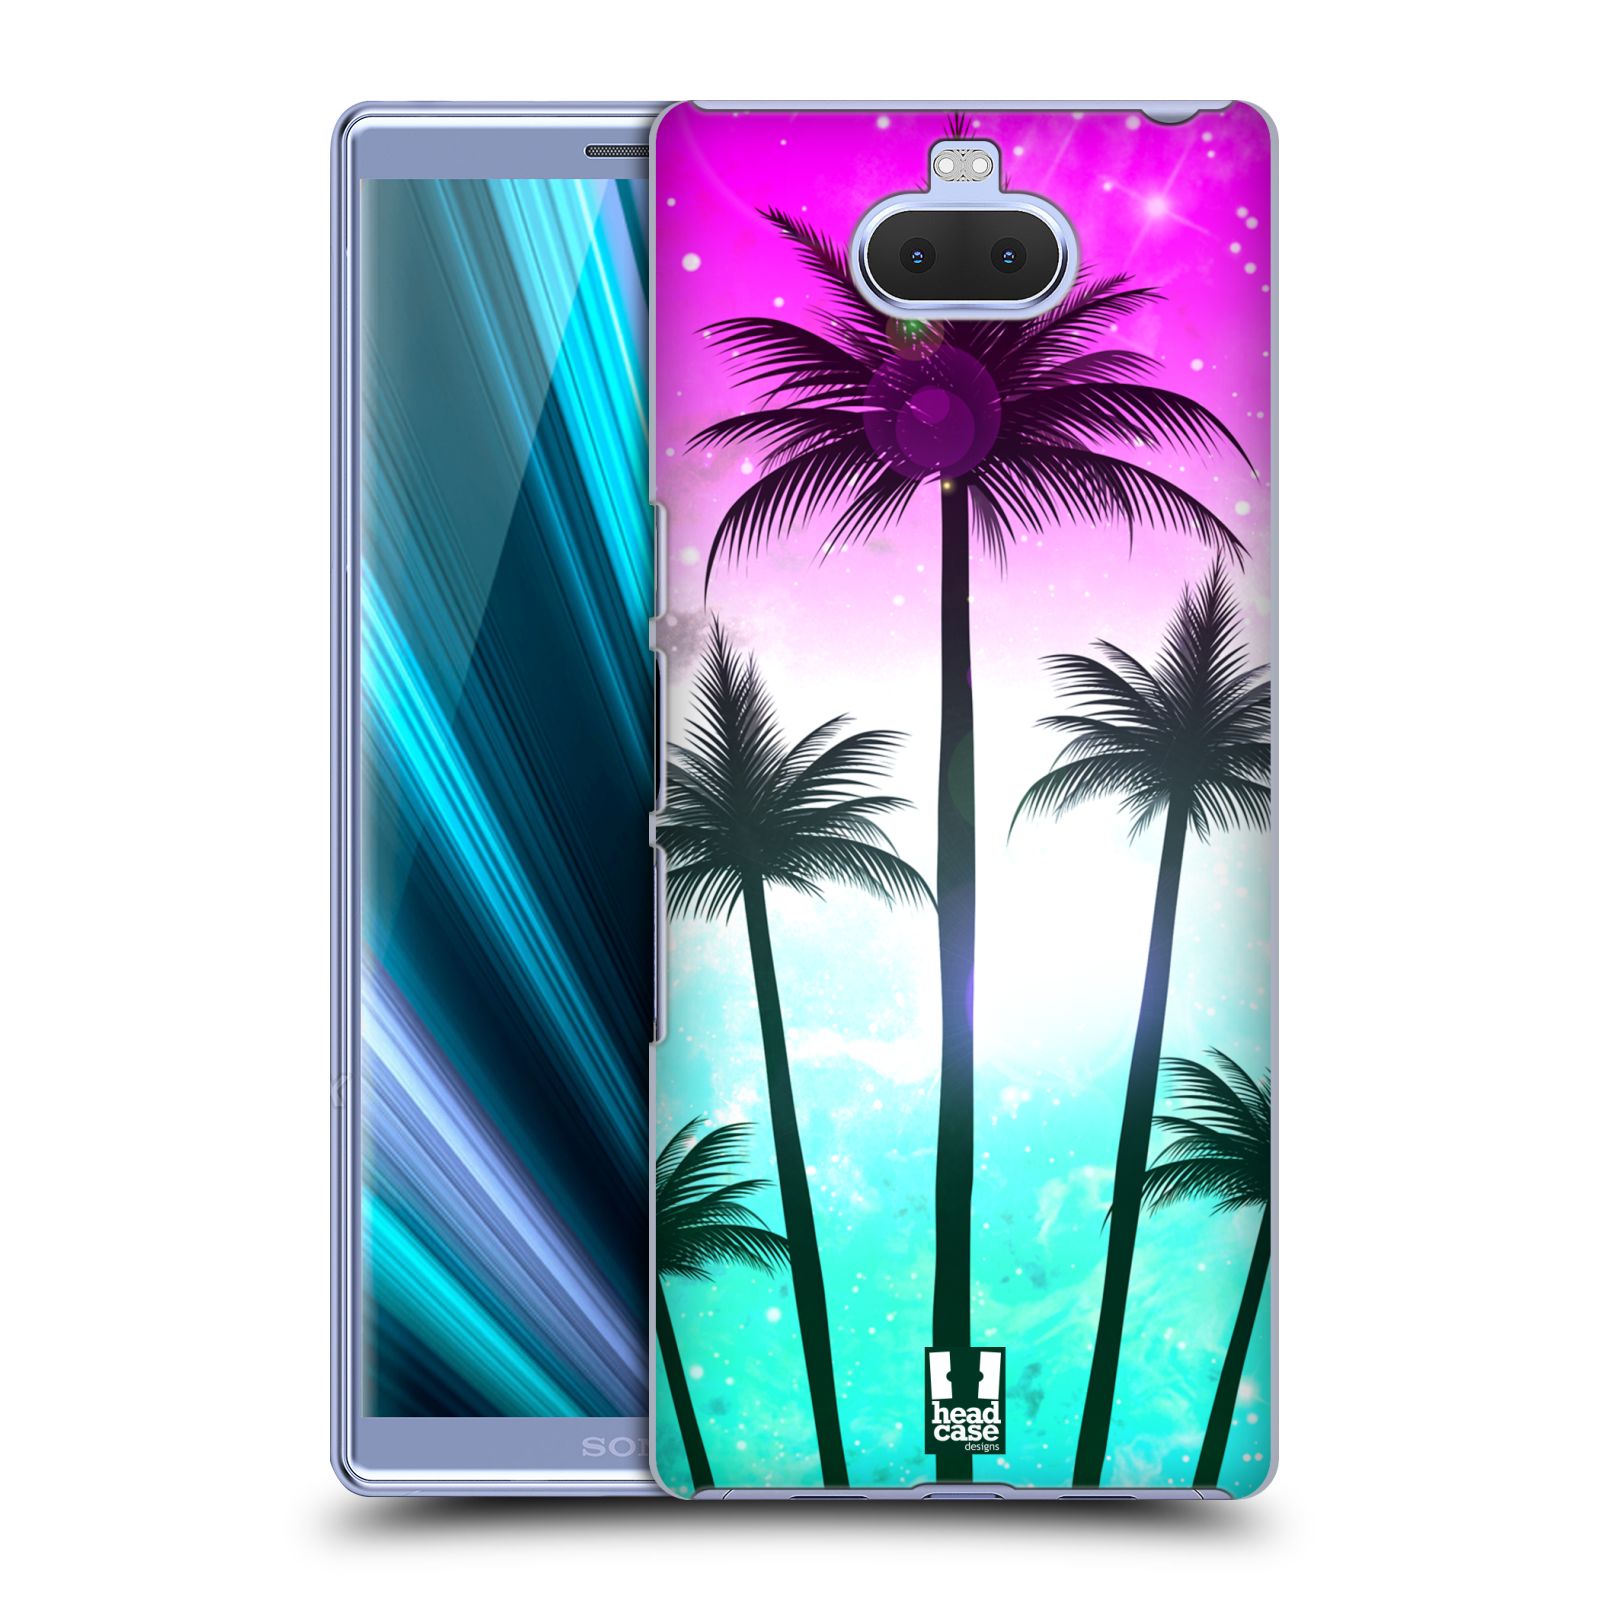 Pouzdro na mobil Sony Xperia 10 - Head Case - vzor Kreslený motiv silueta moře a palmy RŮŽOVÁ A TYRKYS